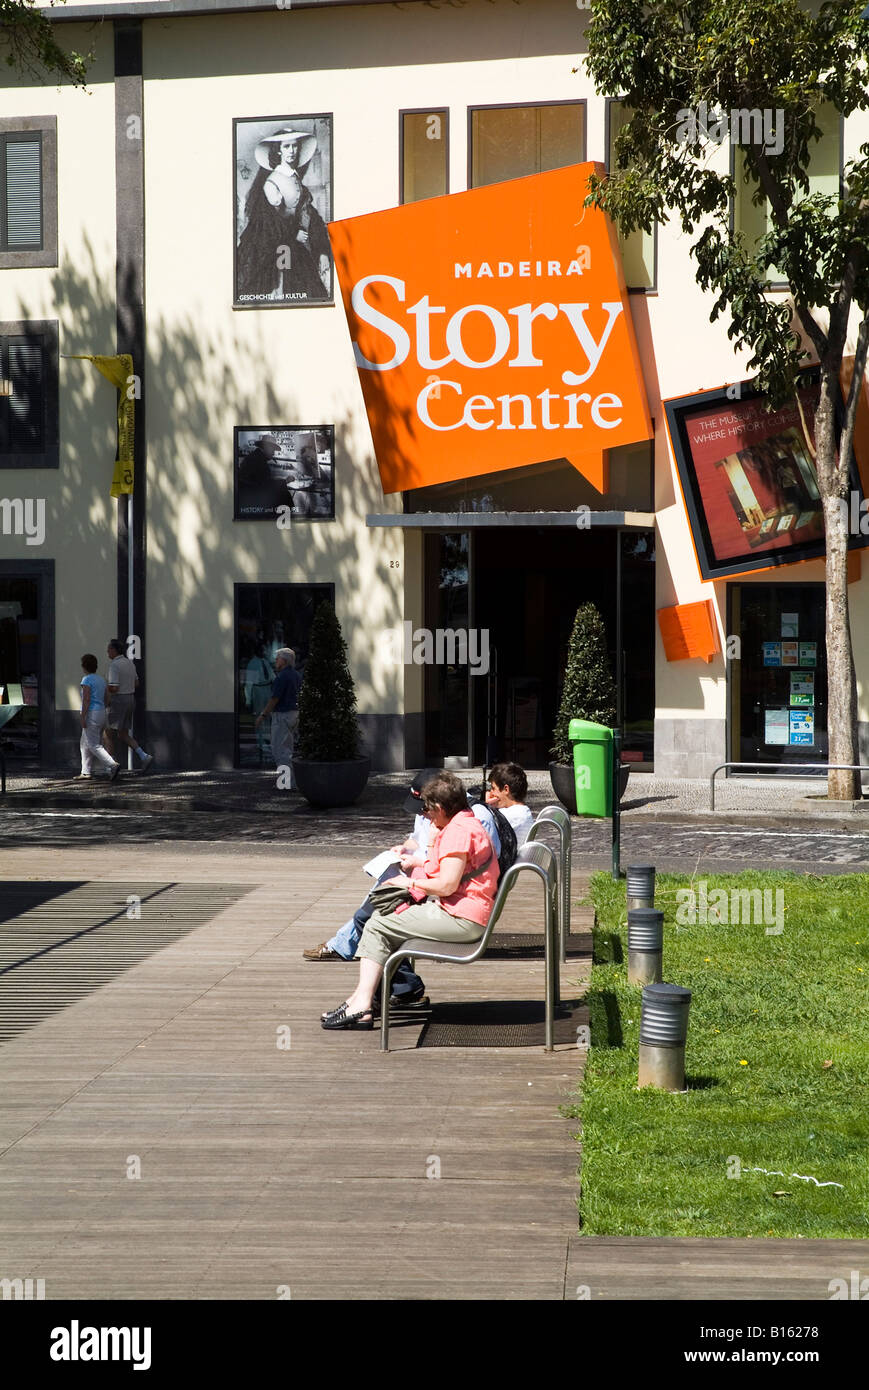 Dh Zona Velha Funchal Madeira Touristen entspannen Sie Madeira Story Centre Eingang Museum Stockfoto